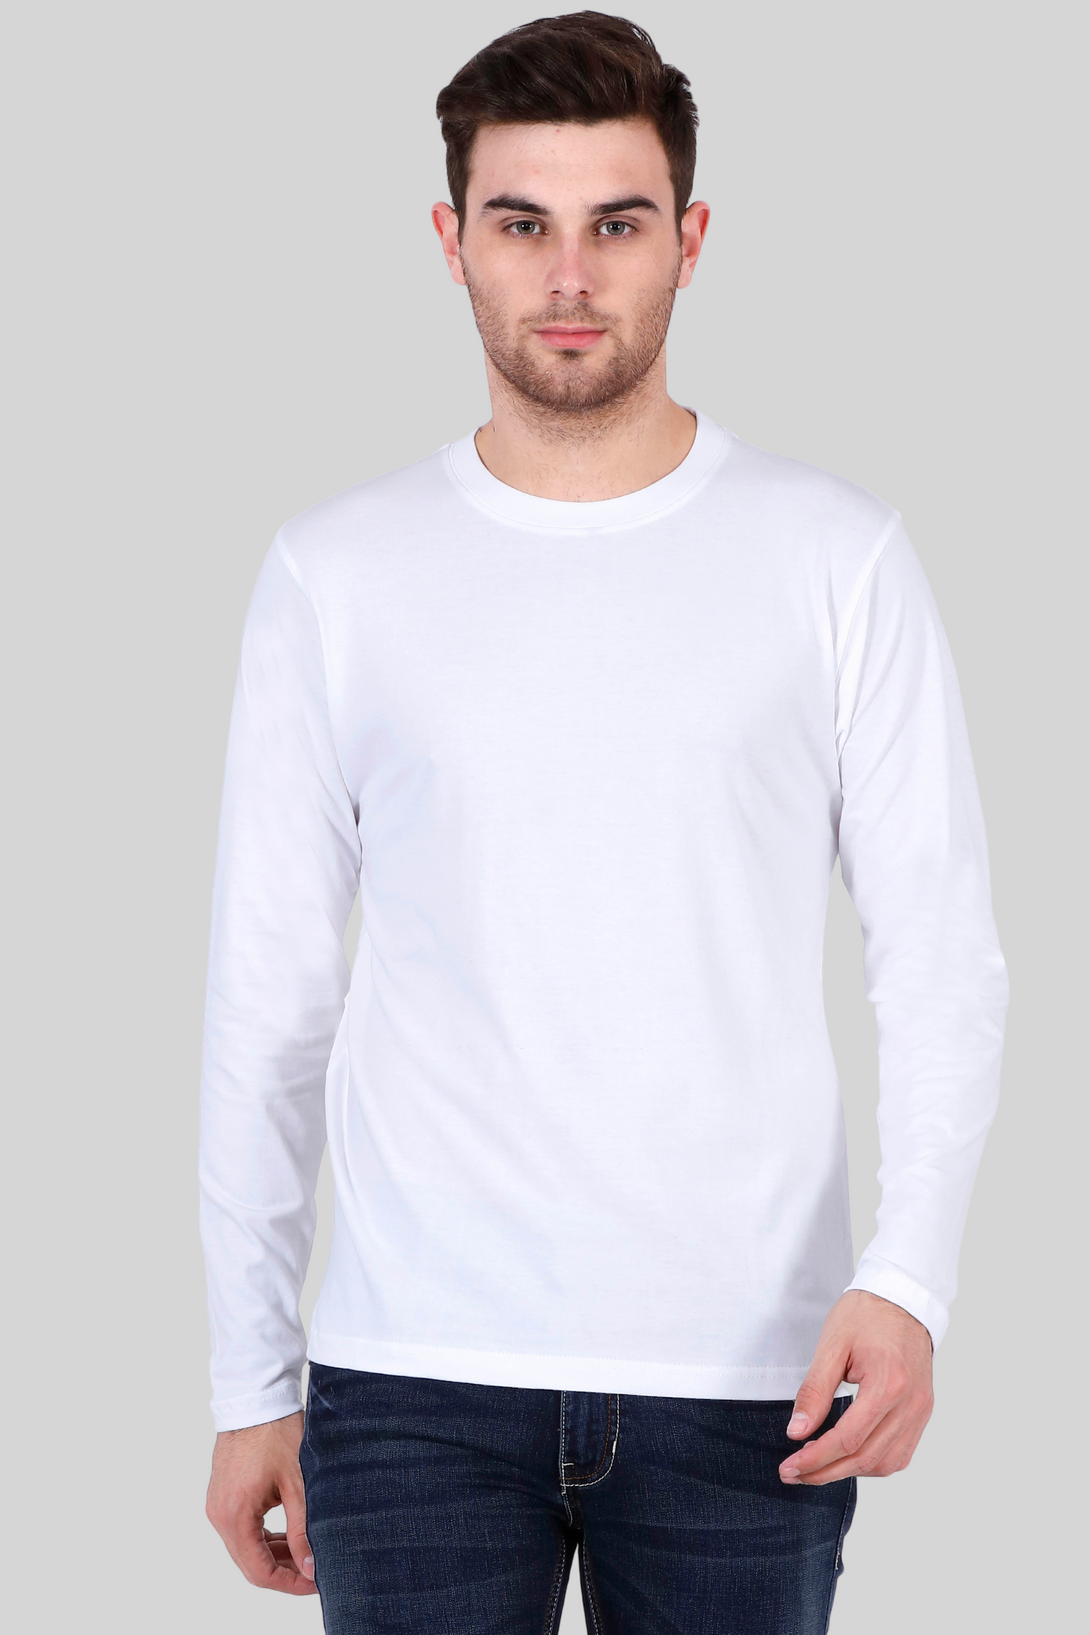 White Full Sleeve T-Shirt For Men - WowWaves - 8